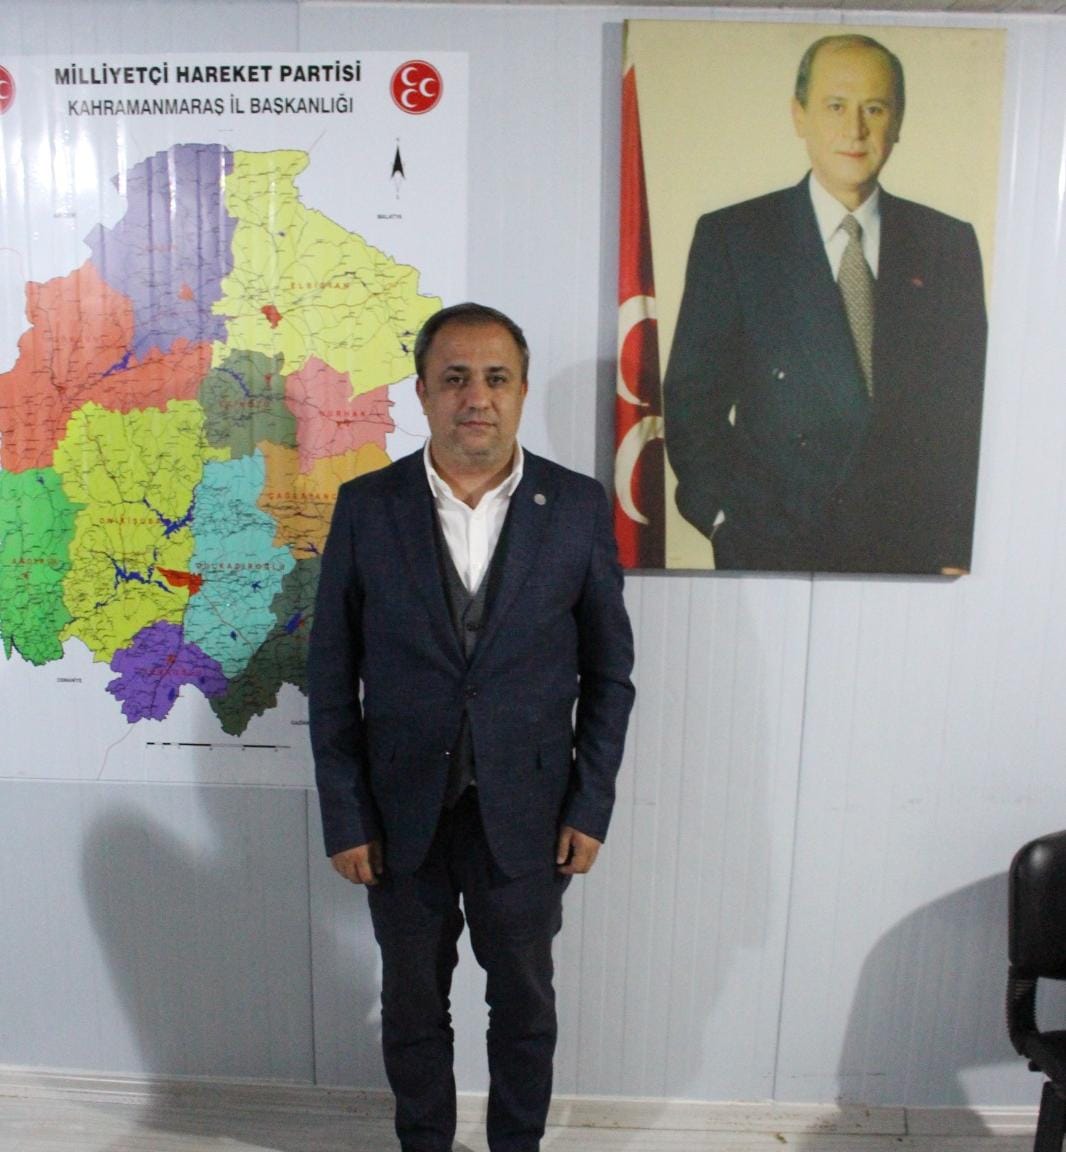 MHP İl Başkanı Demiröz: Seçim İlk Turda Cumhur İttifakının zaferi ile sonuçlanacaktır